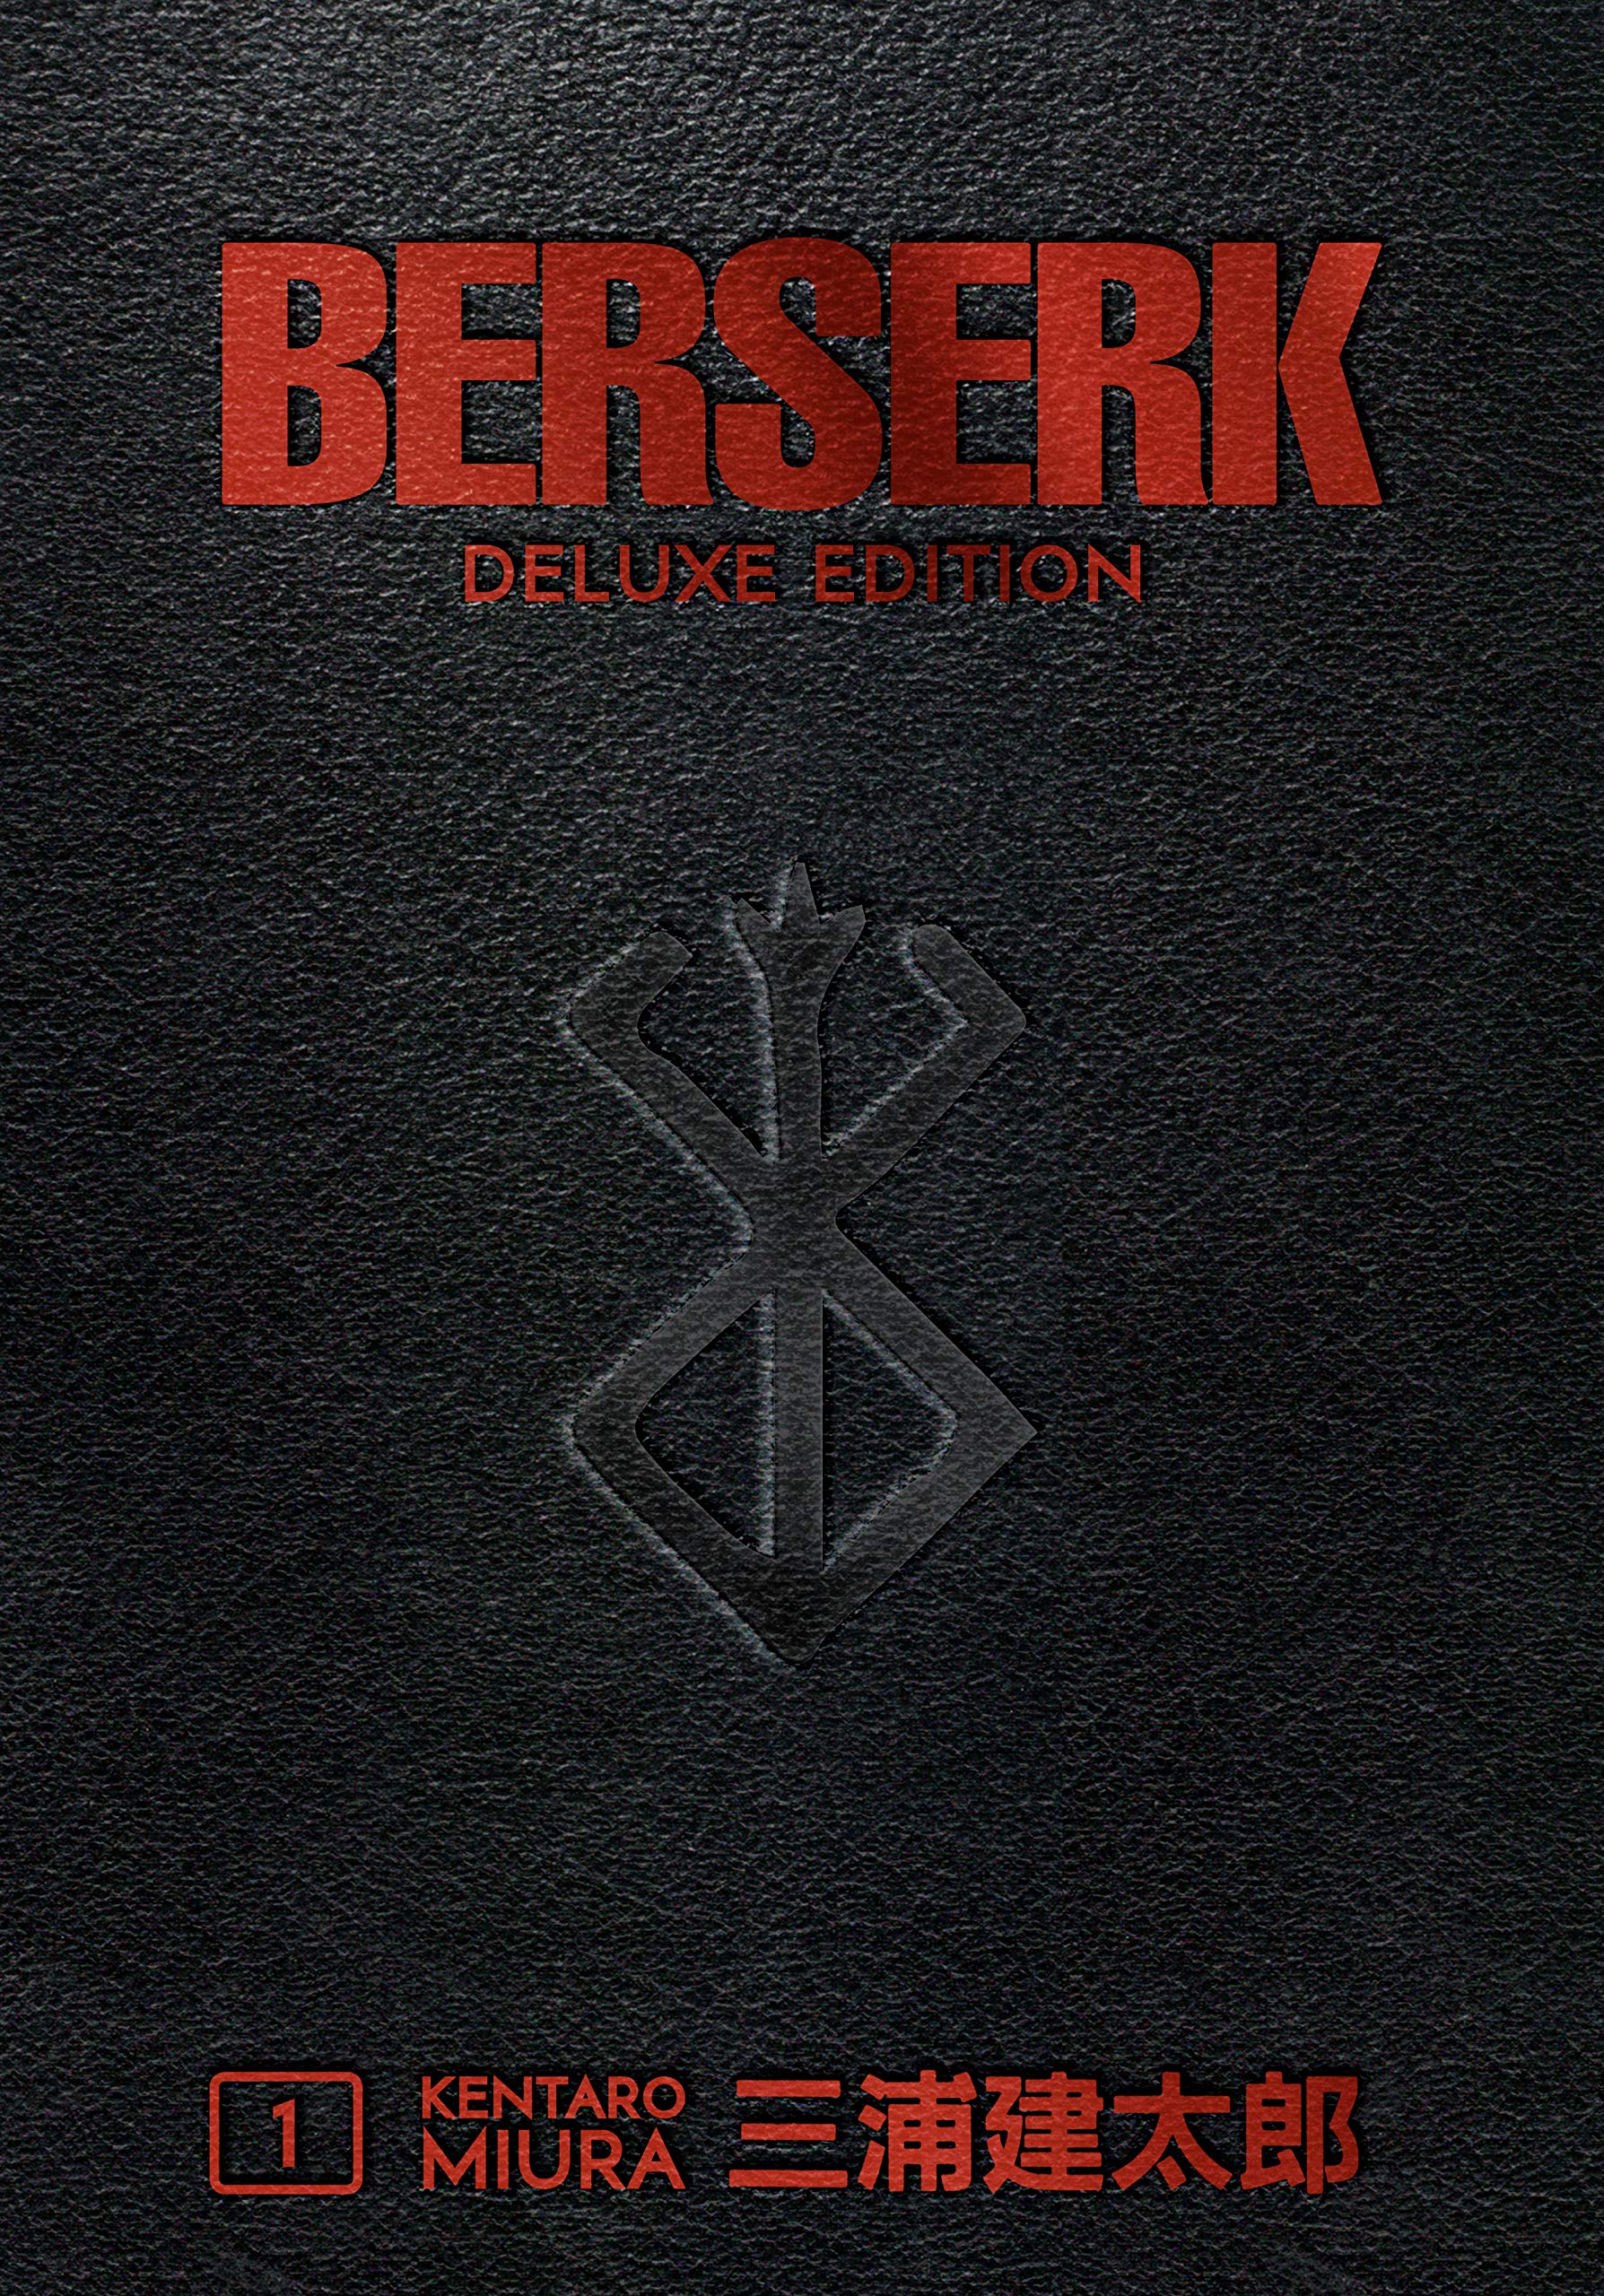 Berserk Deluxe Volume 1 Review